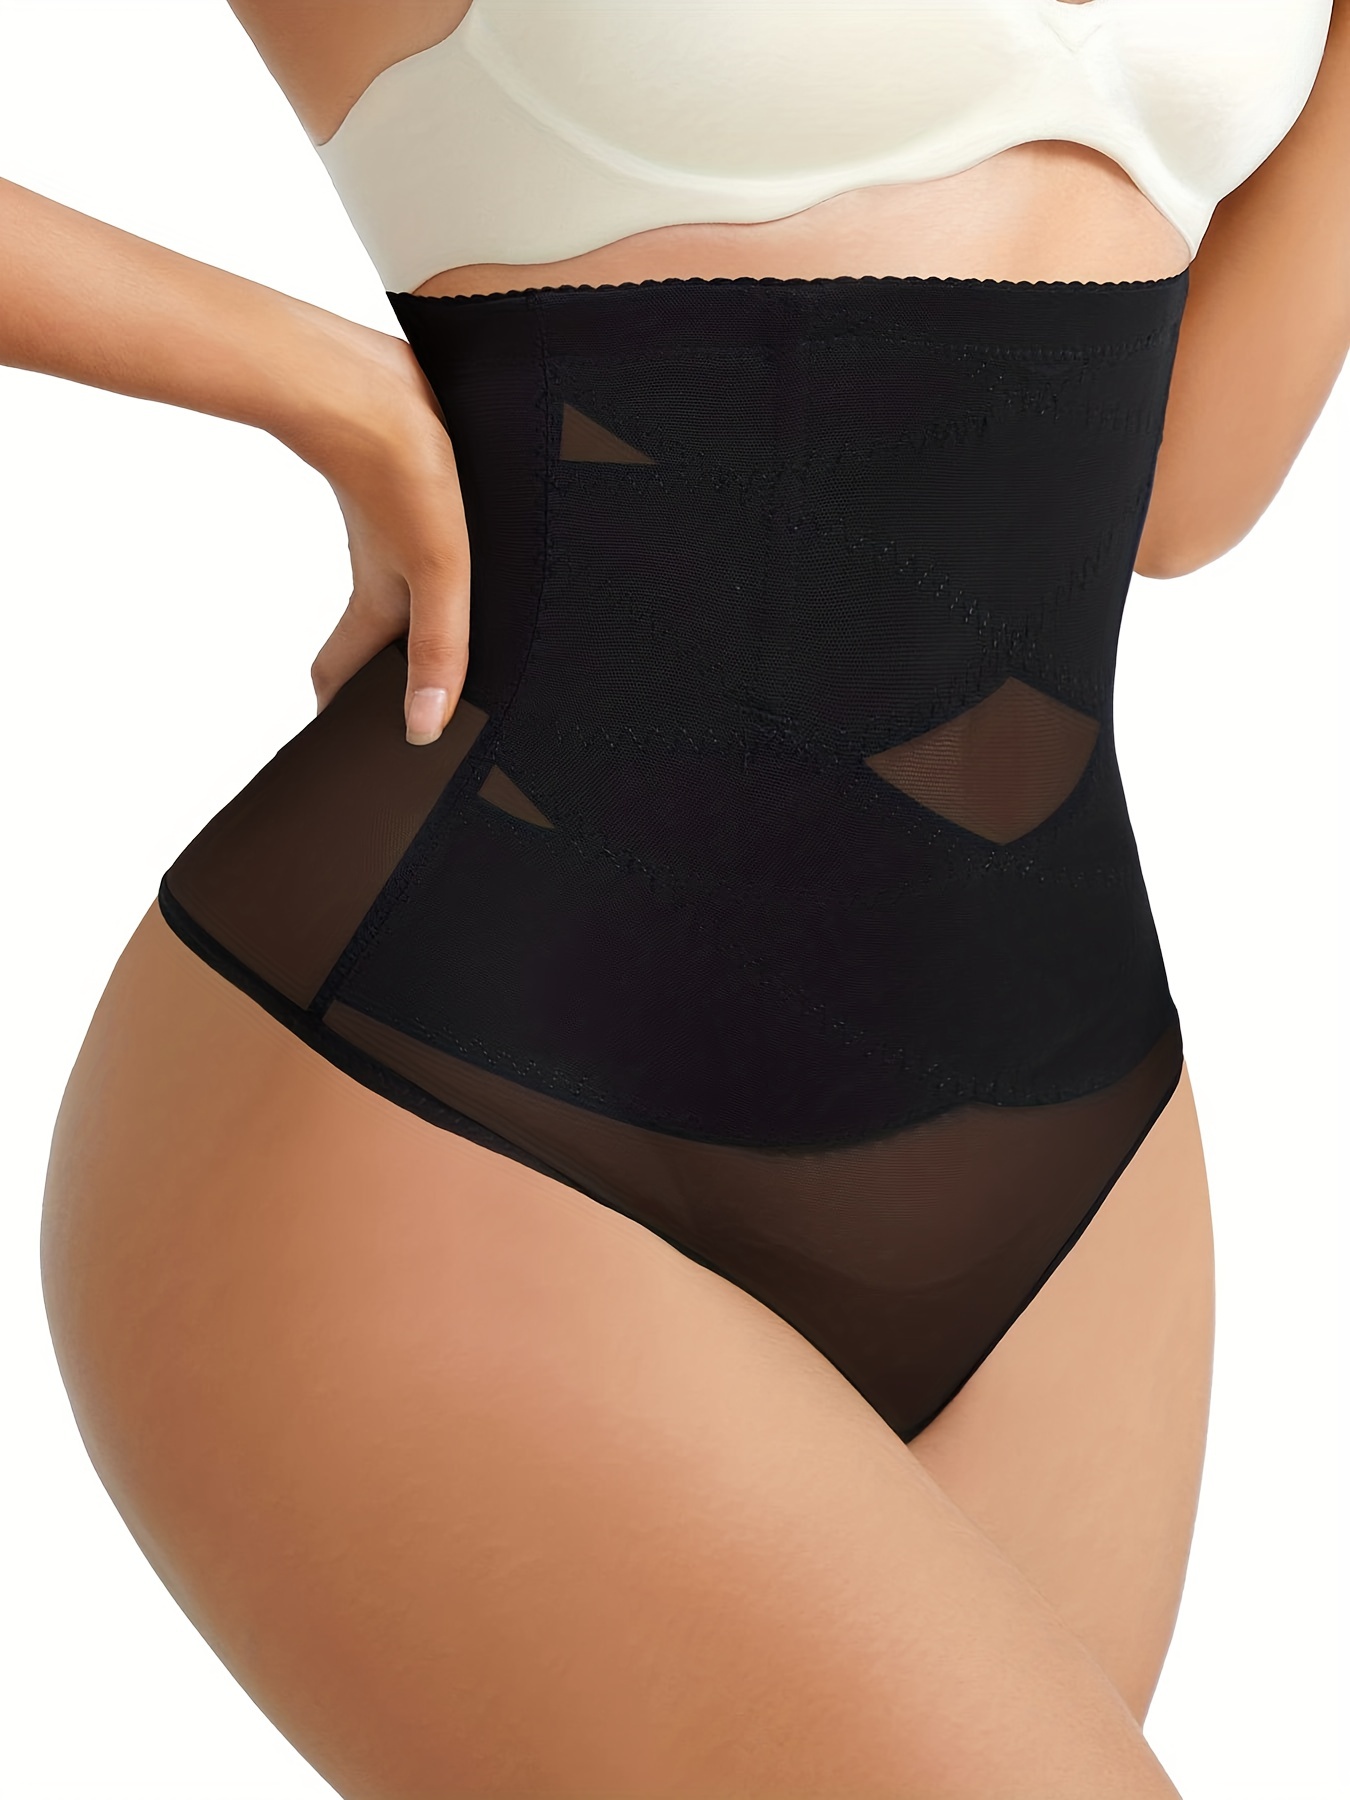 Shapewear Bodysuit For Women Tummy Control Butt Lifter Panty Hi